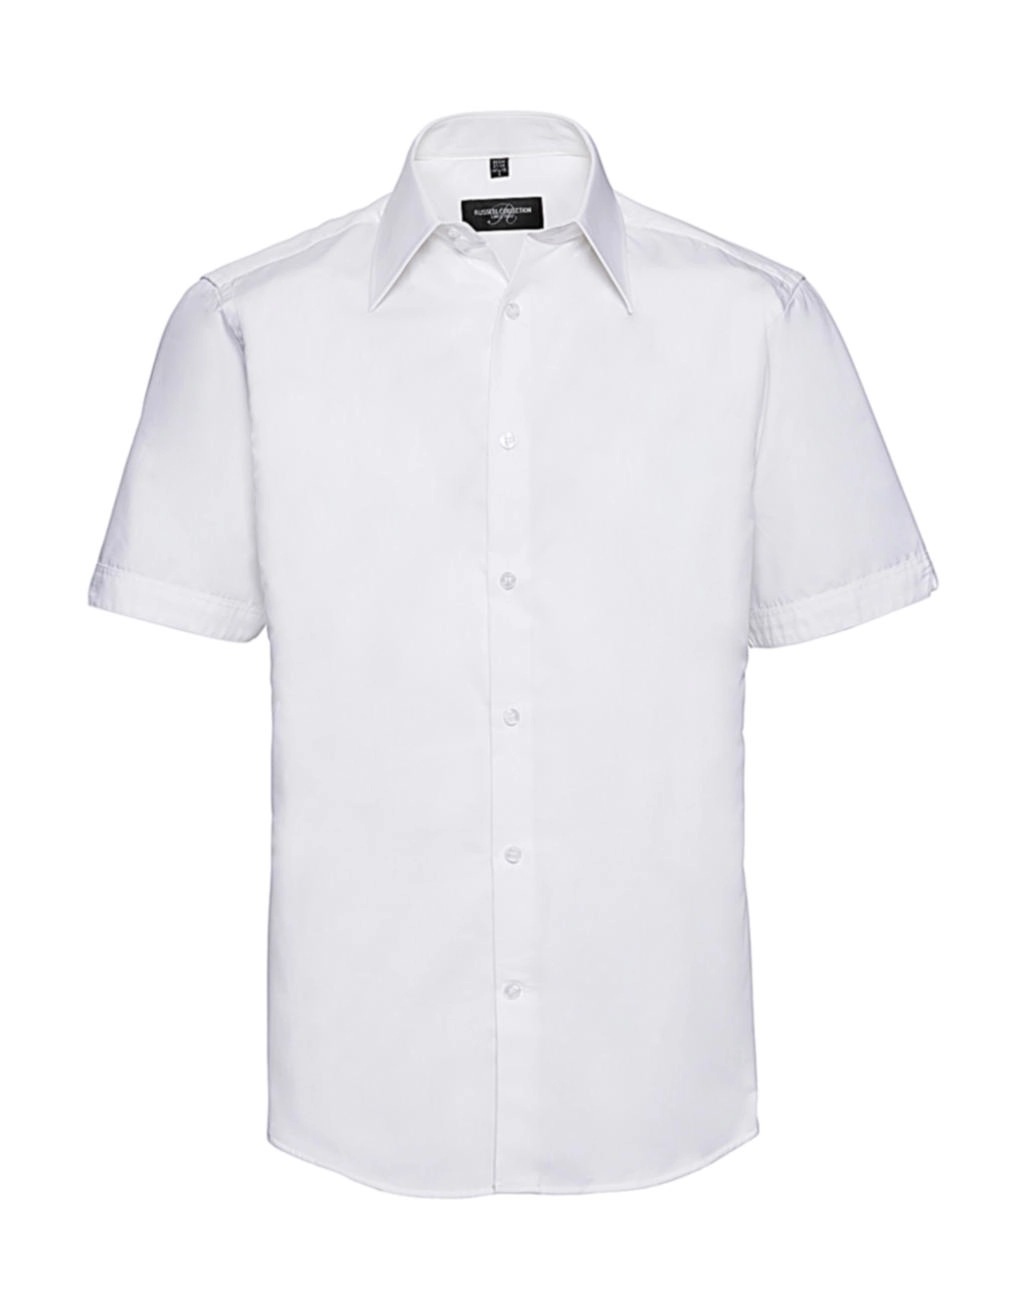 Tencel® Fitted Shirt zum Besticken und Bedrucken in der Farbe White mit Ihren Logo, Schriftzug oder Motiv.